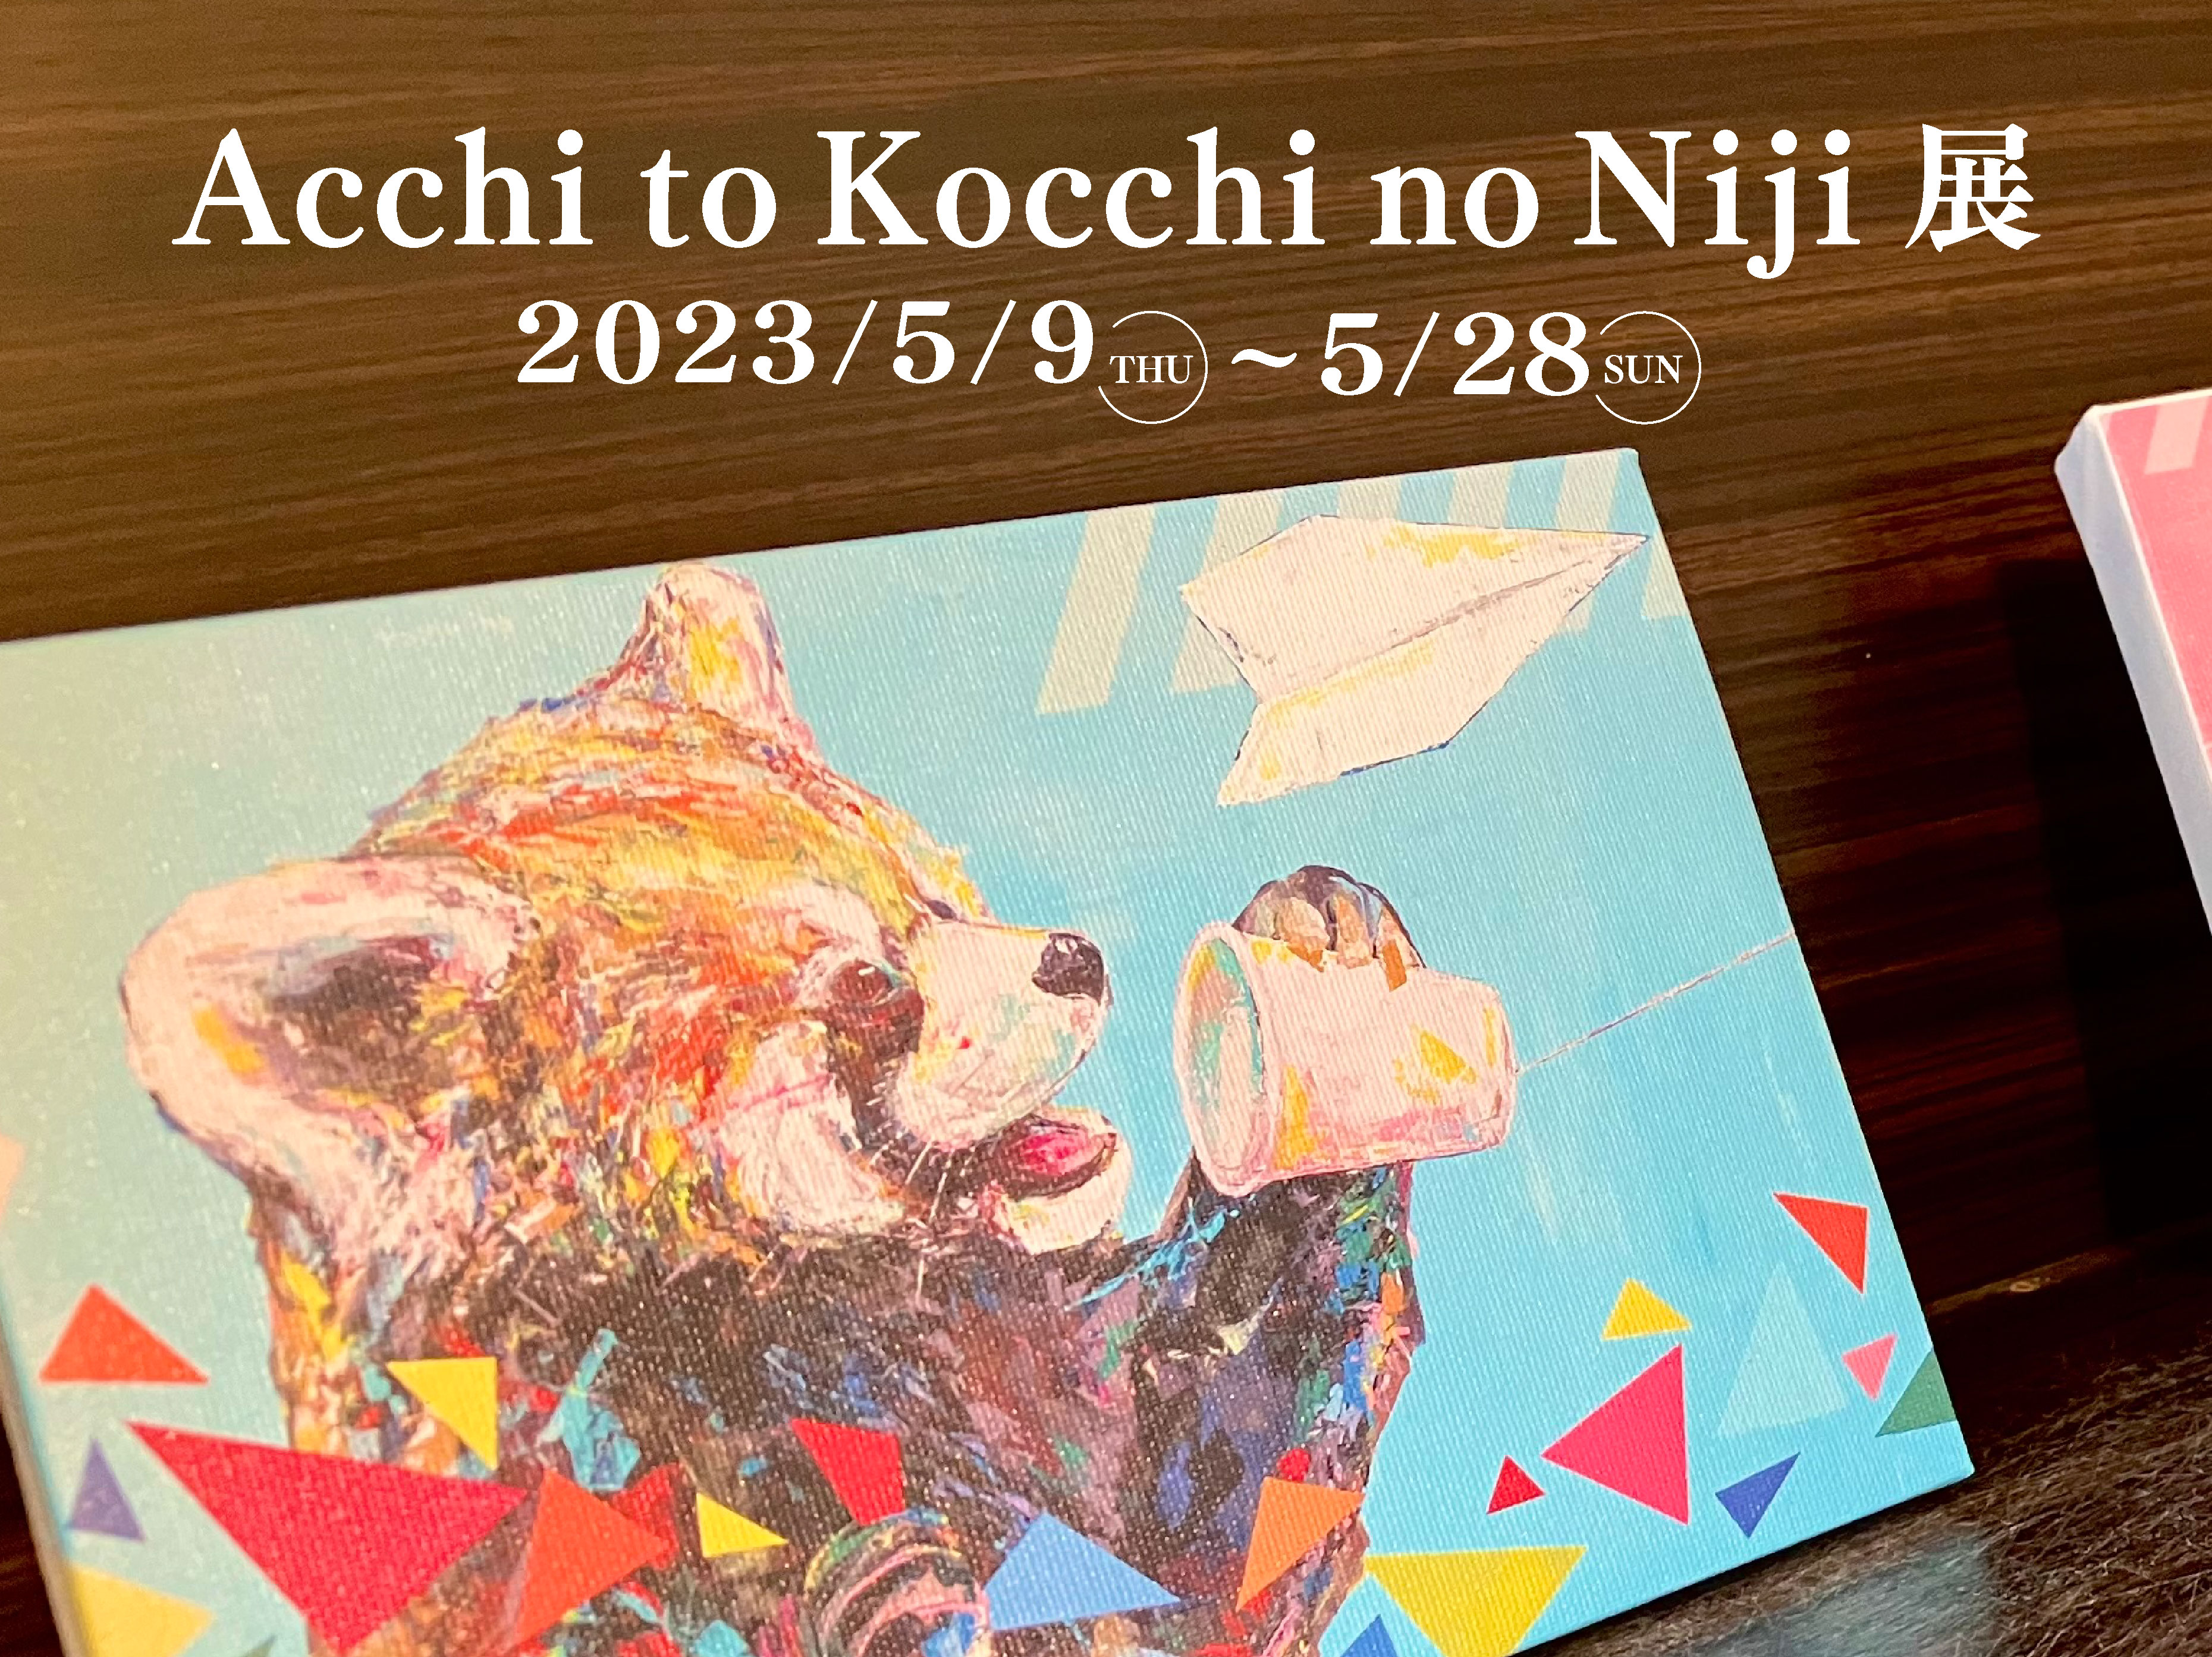 Acchi to Kocchi no Niji展 315×236.jpg